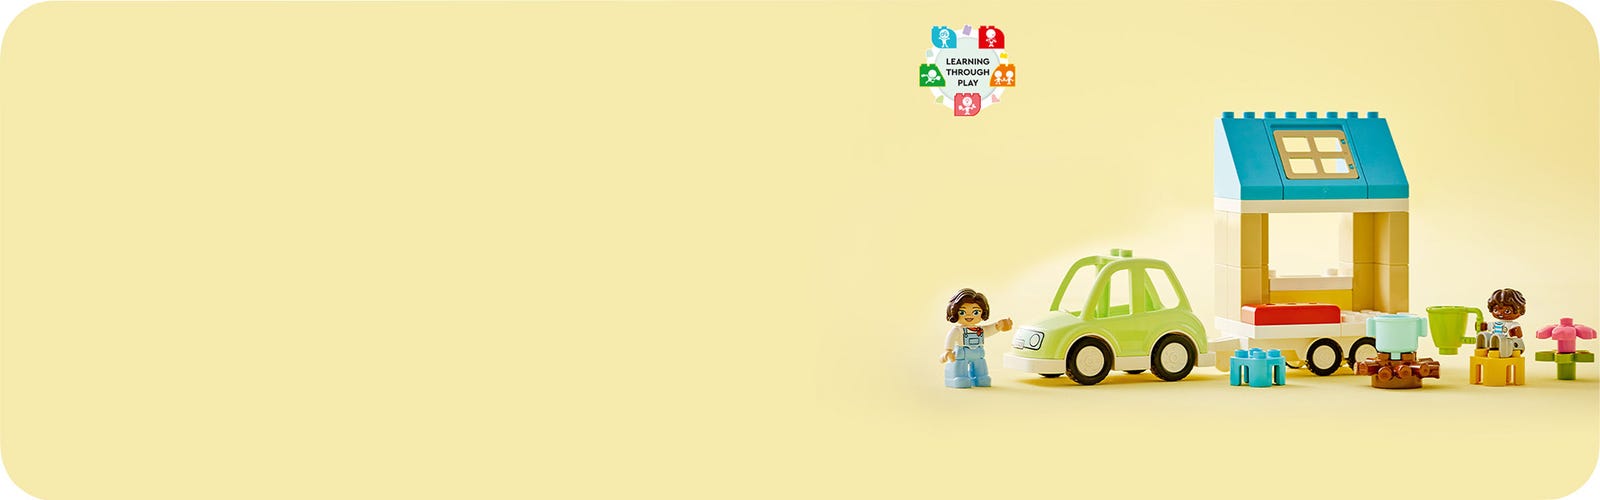  LEGO DUPLO Family House on Wheels 10986, auto de juguete para  niños y niñas de 2 años de edad, juguetes de aprendizaje preescolar, juego  de ladrillos grandes para acampar : Juguetes